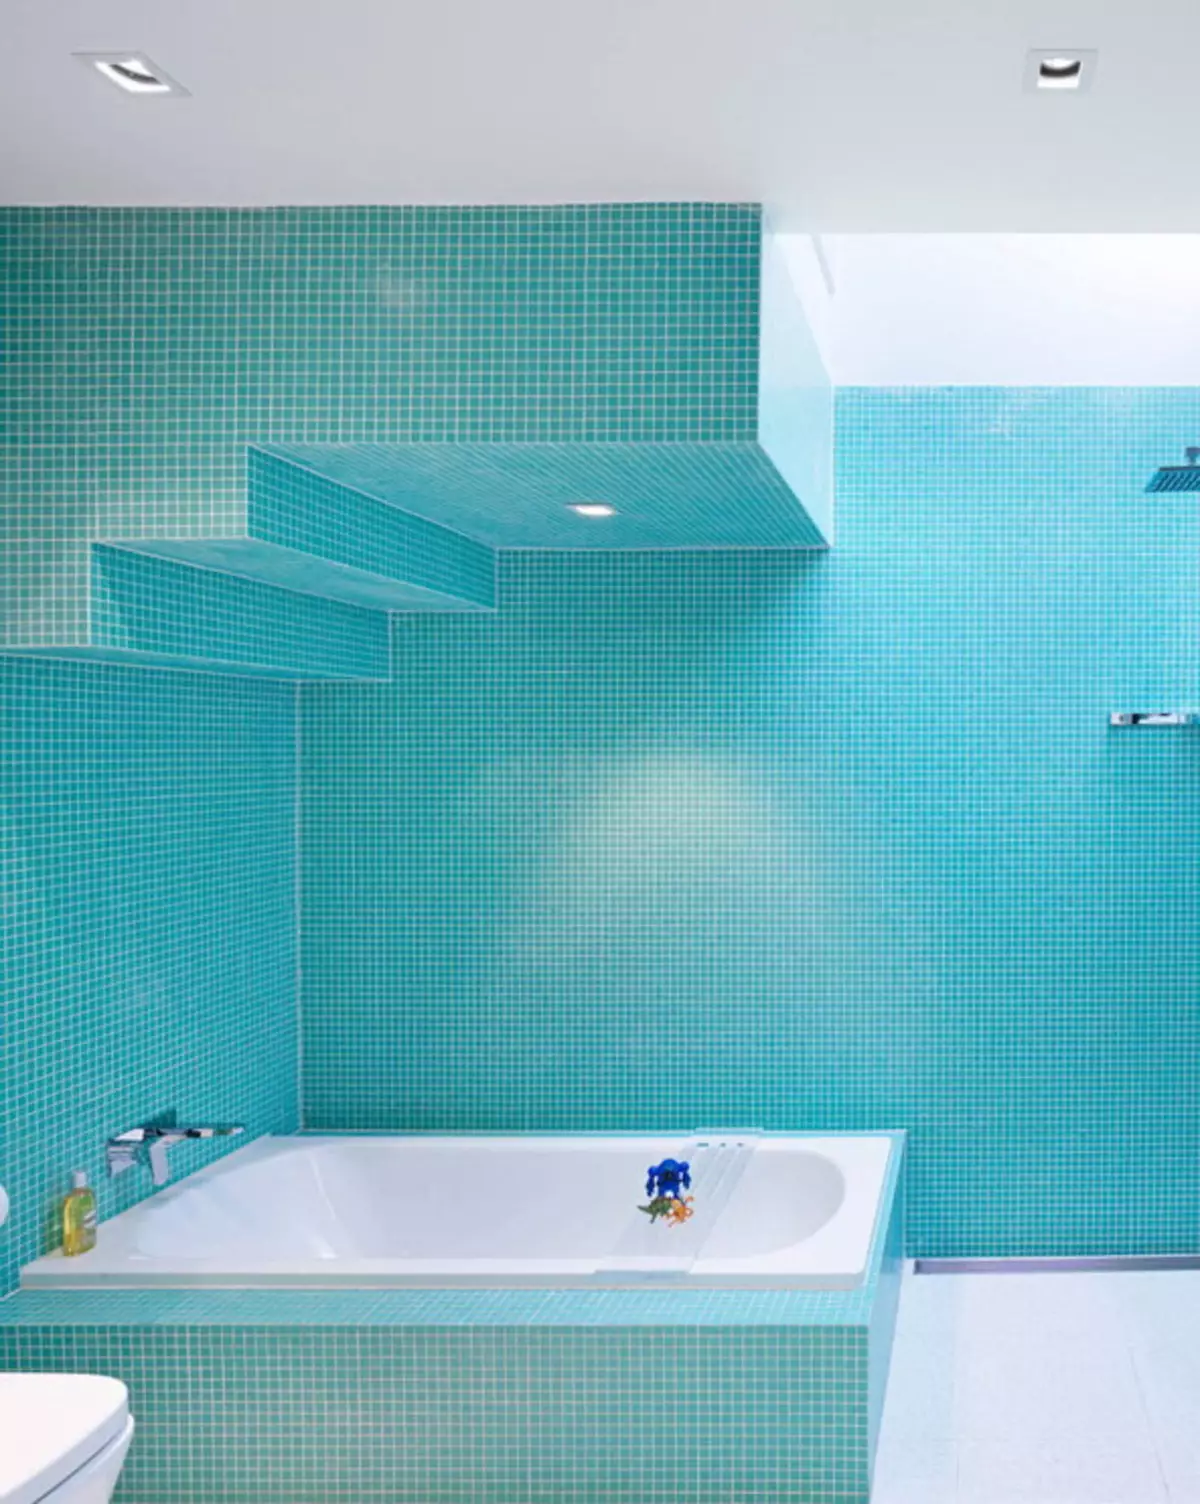 Baño turquesa (61 fotos): Ejemplos de diseño de baño en este color. Entendemos en colores, creamos un hermoso interior. 10203_46